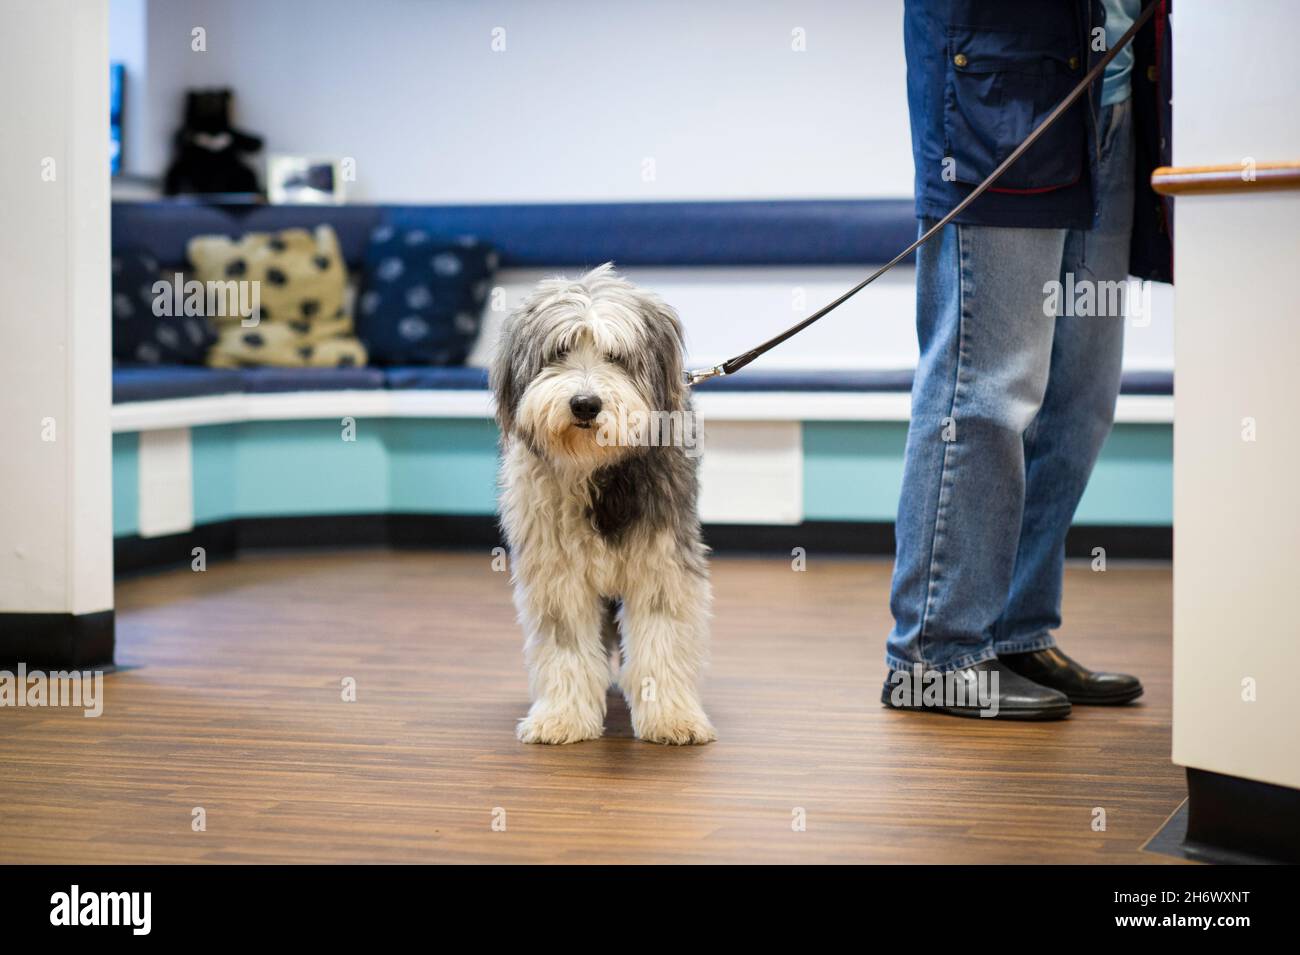 Un chien de compagnie attend patiemment alors que son propriétaire parle au personnel d'accueil lors d'une chirurgie vétérinaire à Nottingham, Angleterre, Royaume-Uni. Banque D'Images